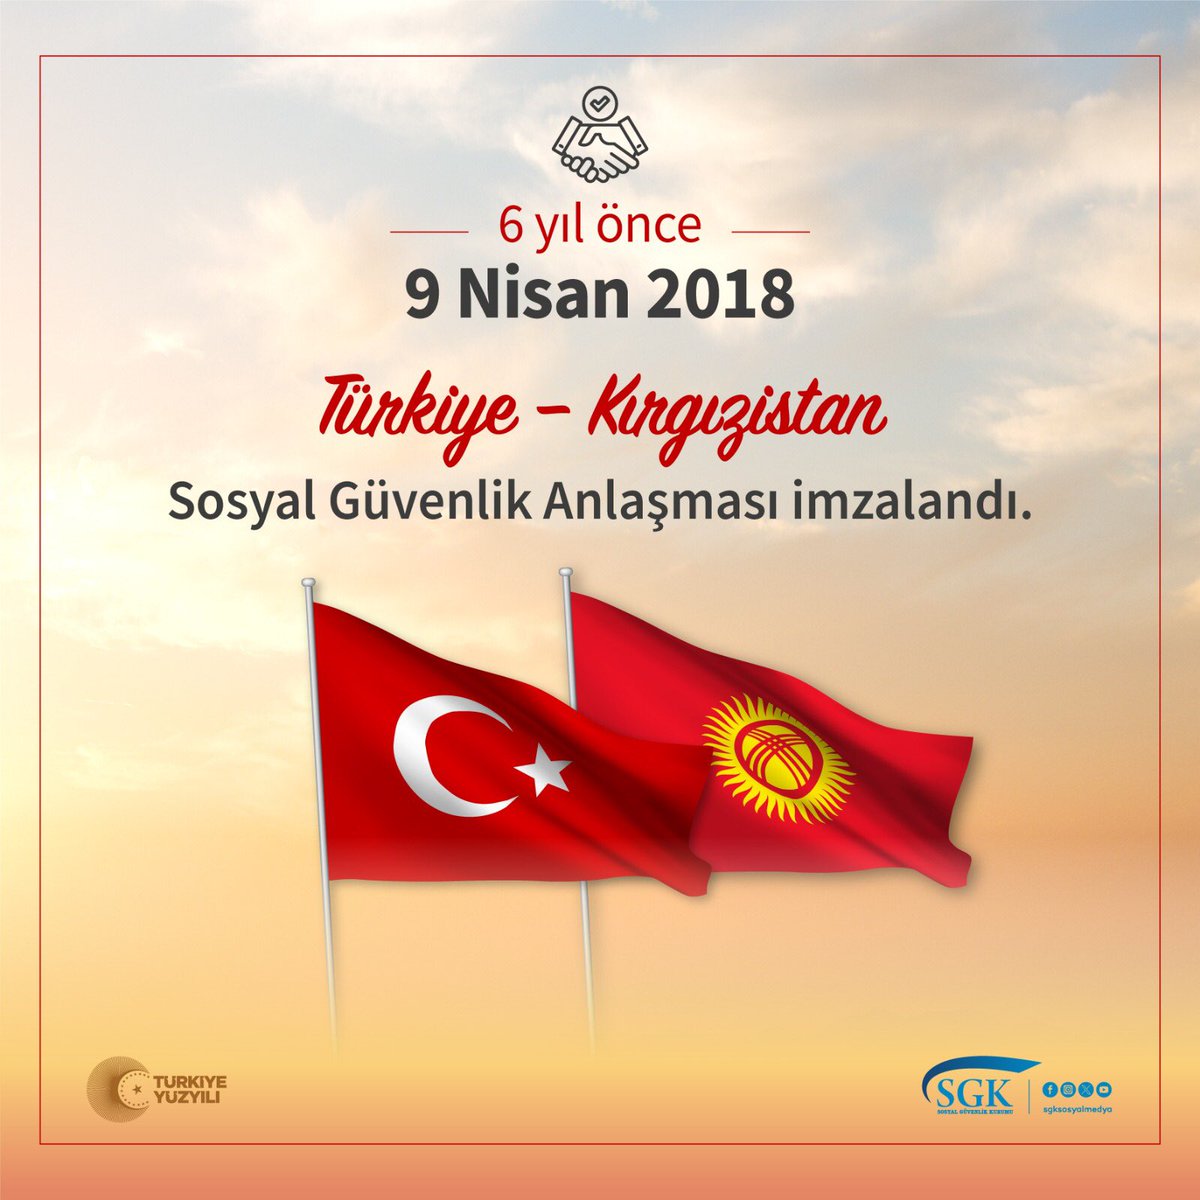 Sosyal Güvenlik Anlaşması ile #Türkiye ve #Kırgızistan vatandaşlarının #sosyalgüvenlik hakları 6 yıldır güvence altında.